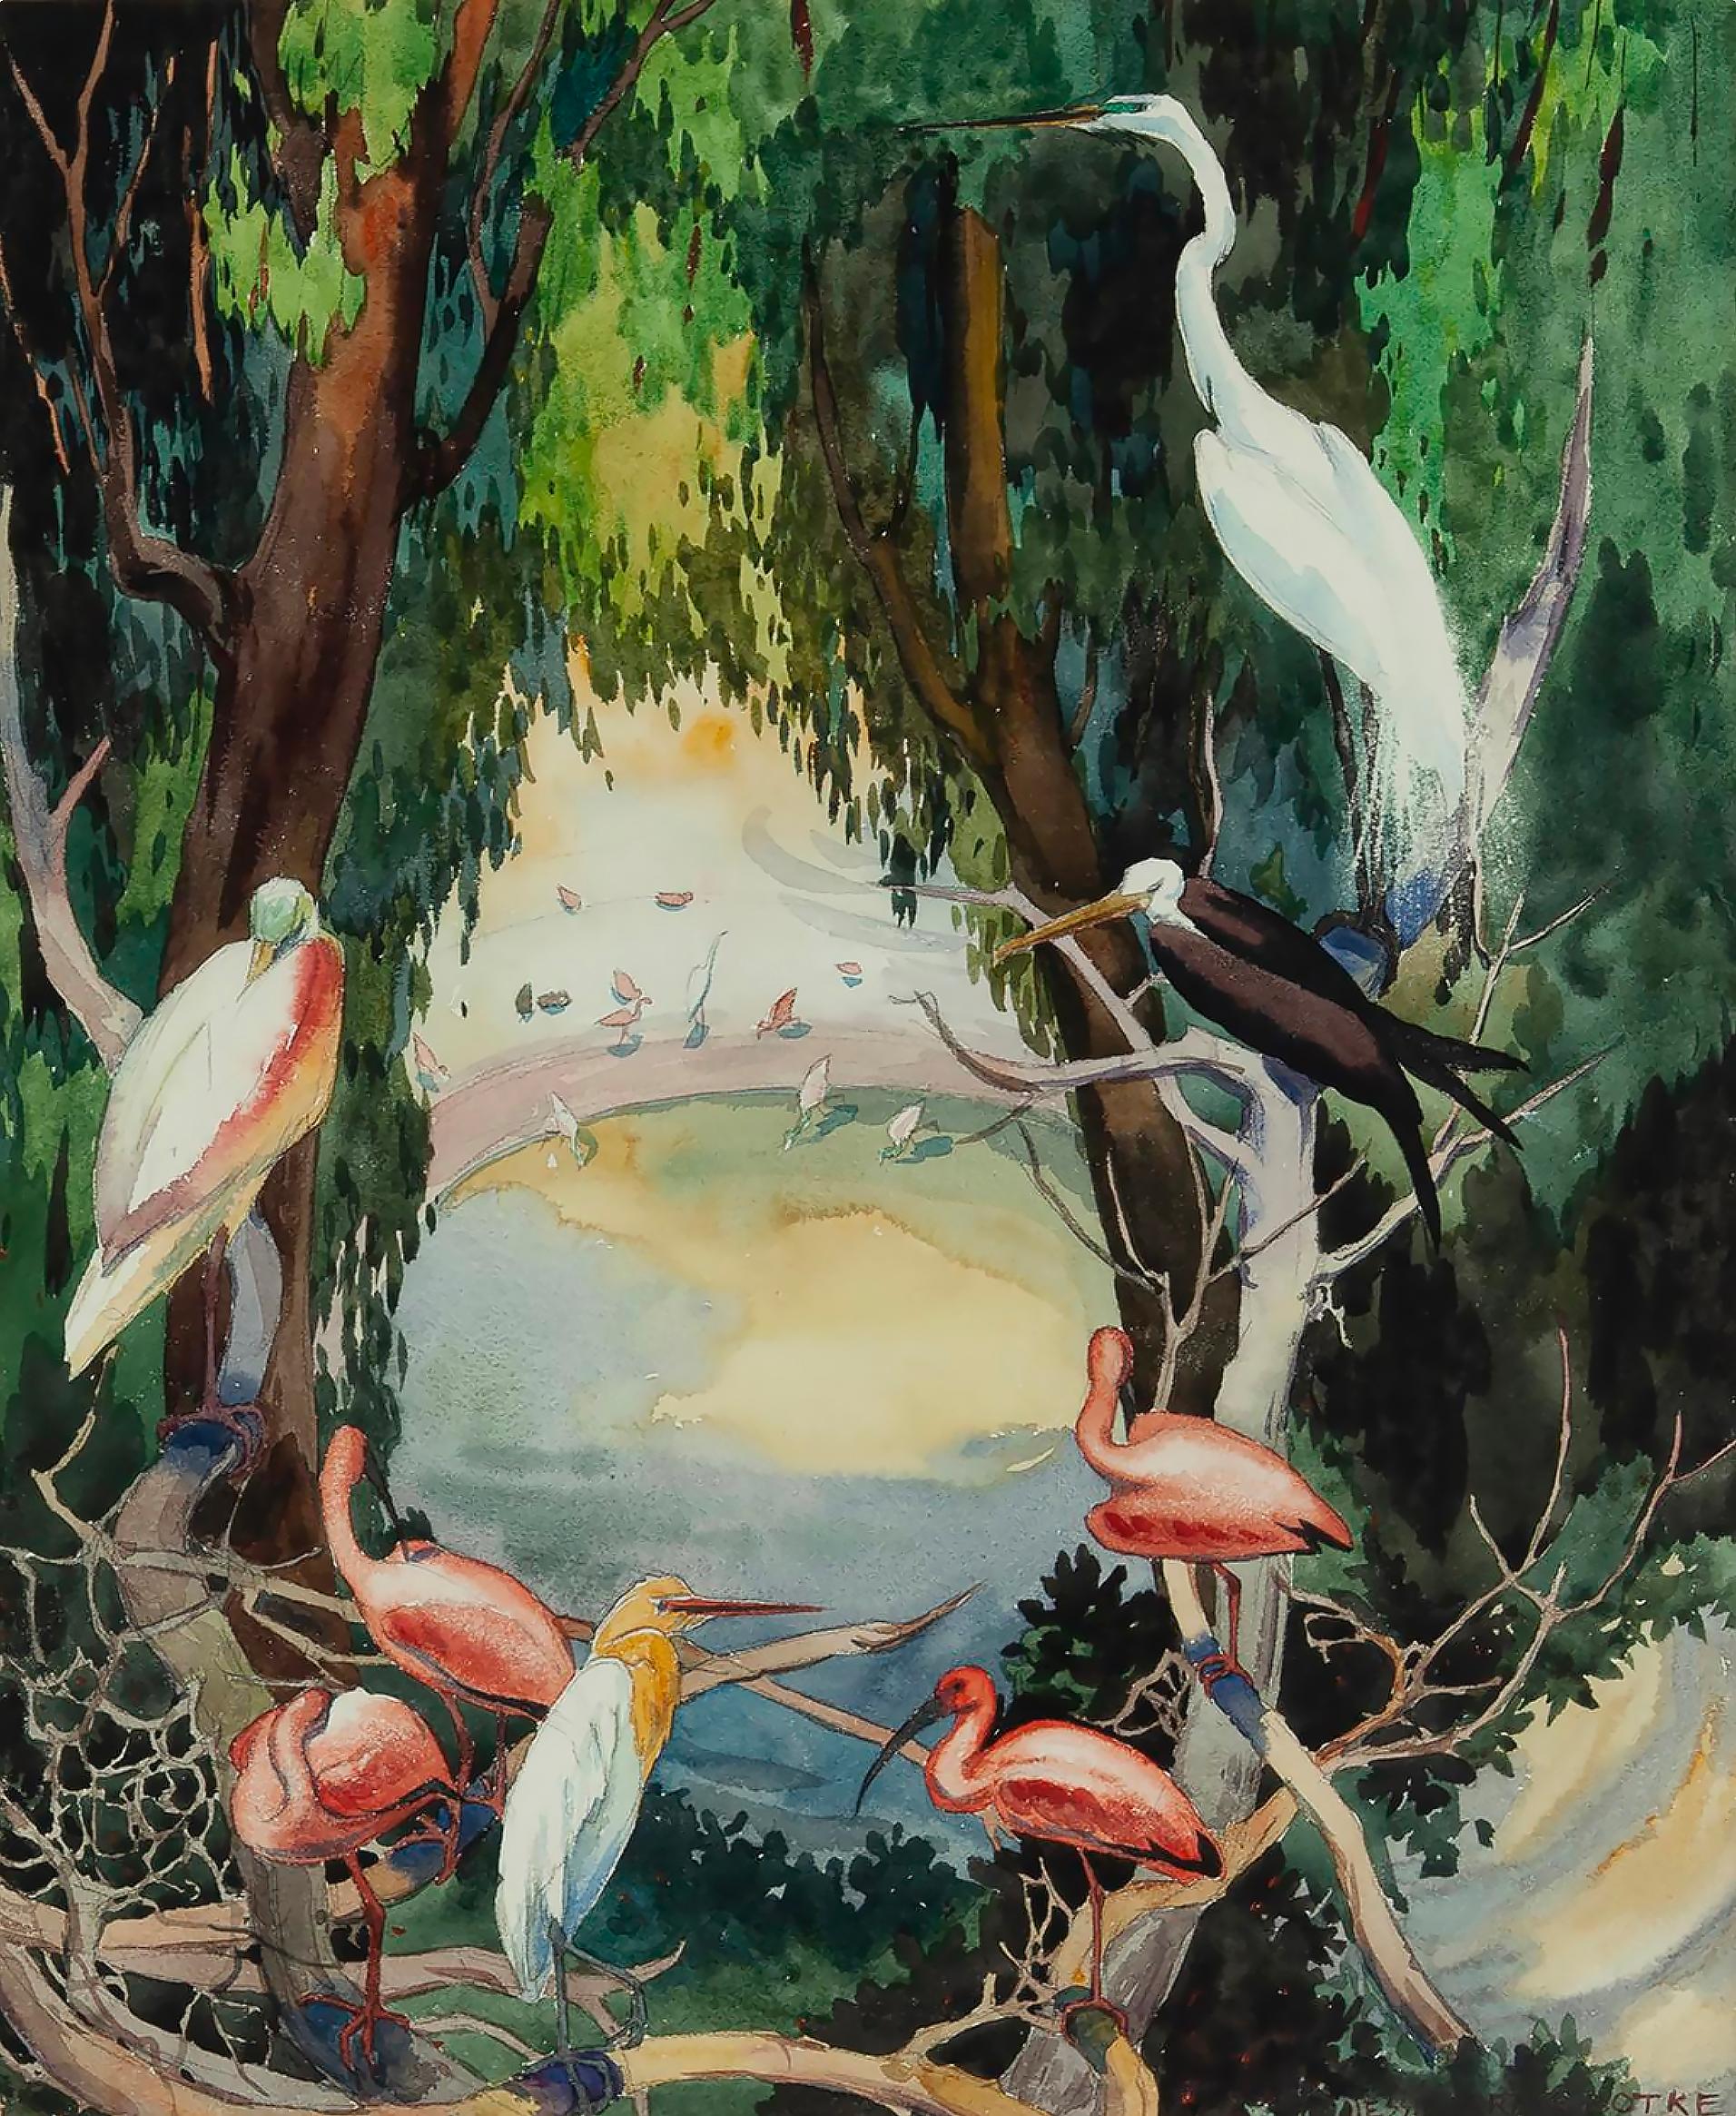 Oiseaux dans un trou d'eau, Heron, Flamingos, cygnes, Egrets - Zoo de San Diego